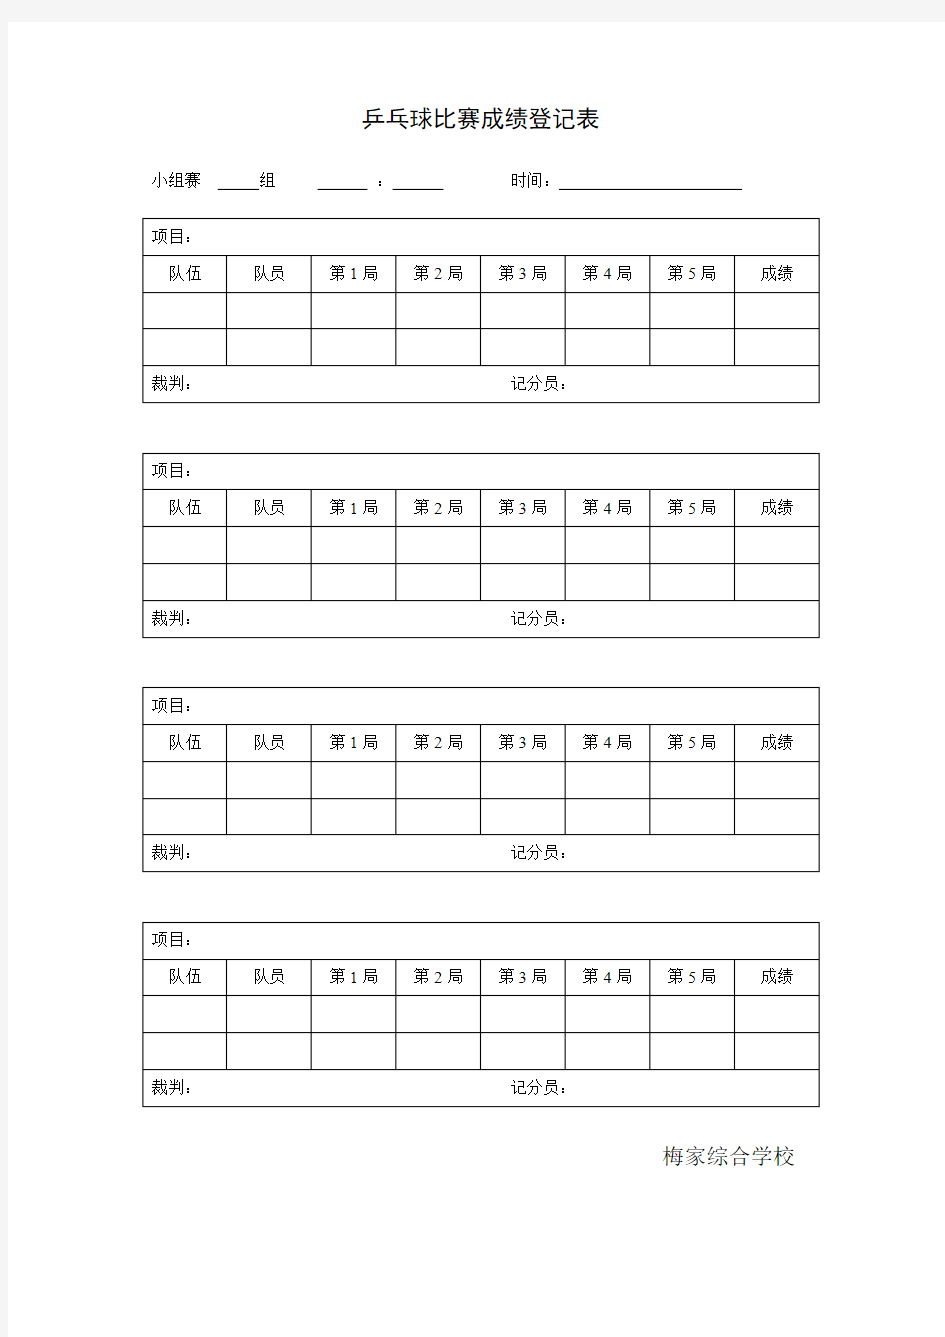 乒乓球比赛成绩登记表